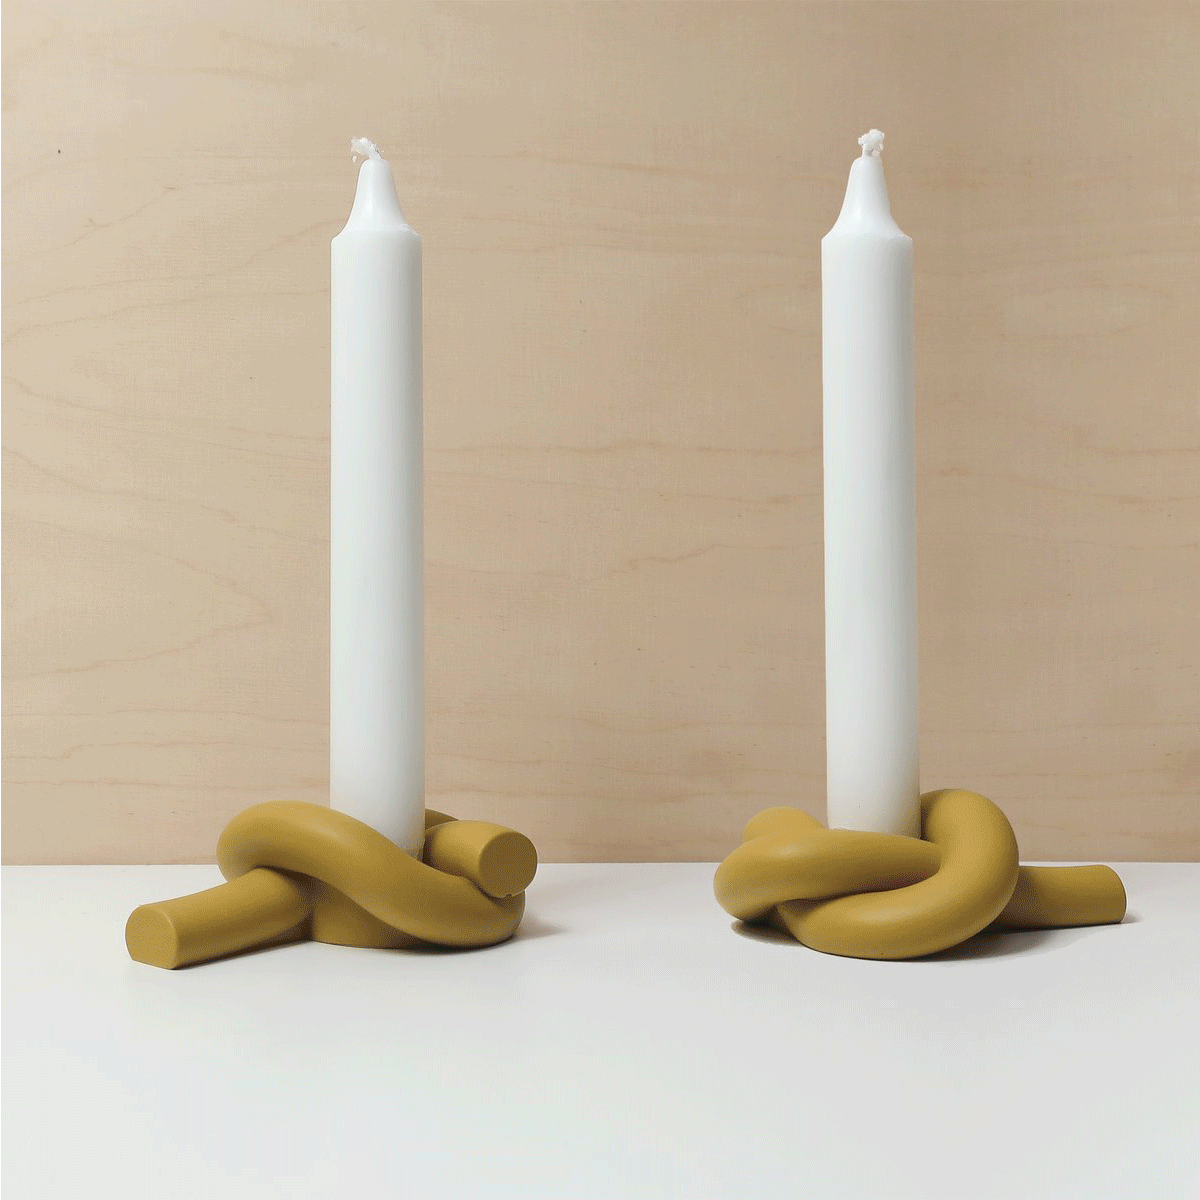 knot candleholder. Design candleholder - knot/button shaped candlestick